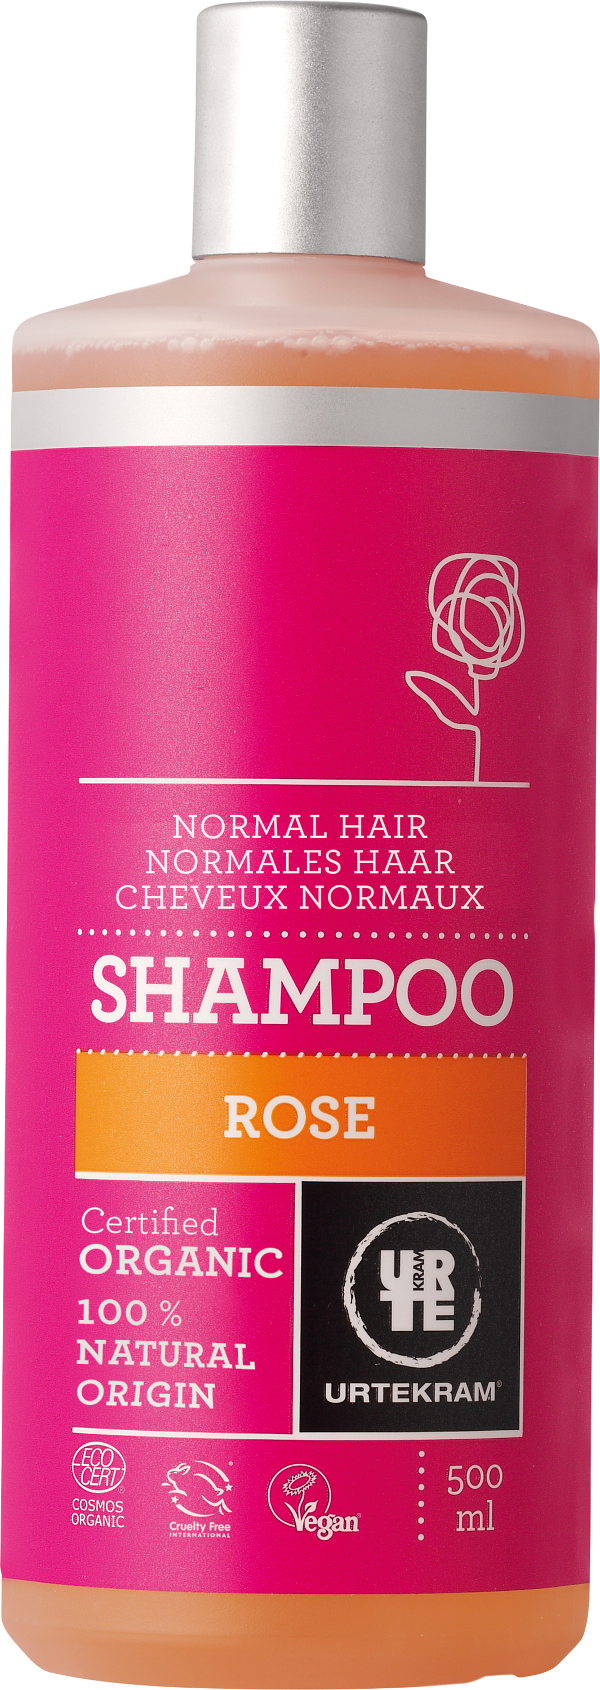 Produktfoto zu Rose Shampoo für normales Haar 500 ml Urtekram